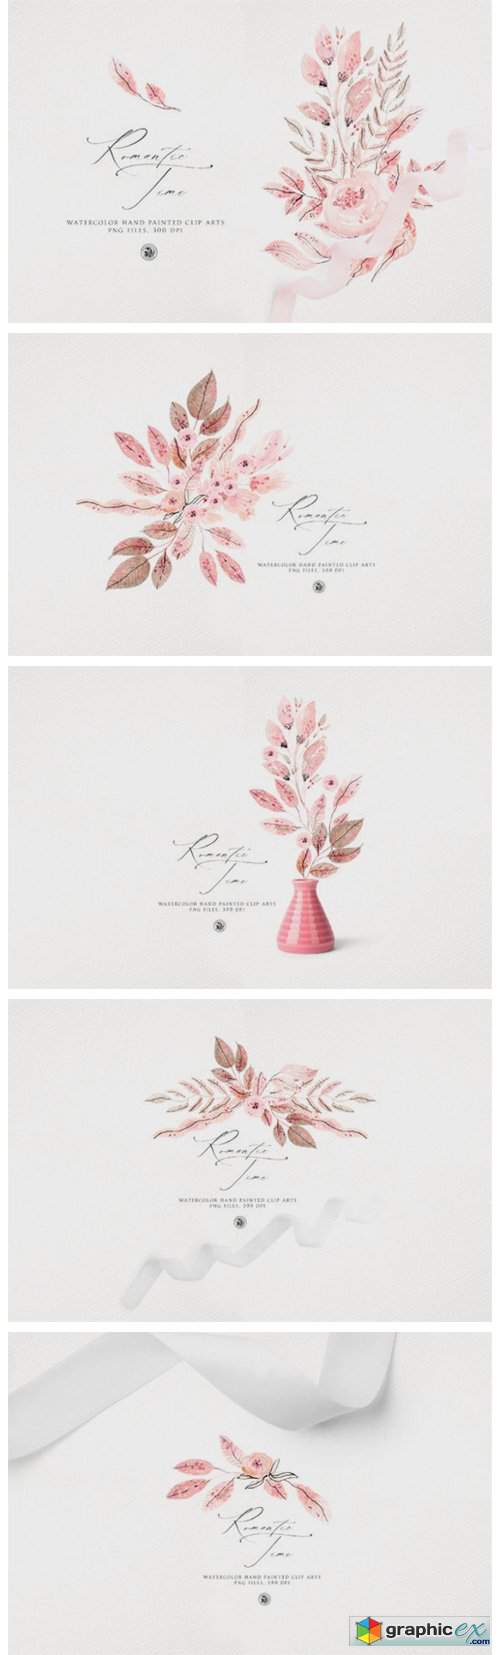  Romantic Time - Watercolor Floral Set 